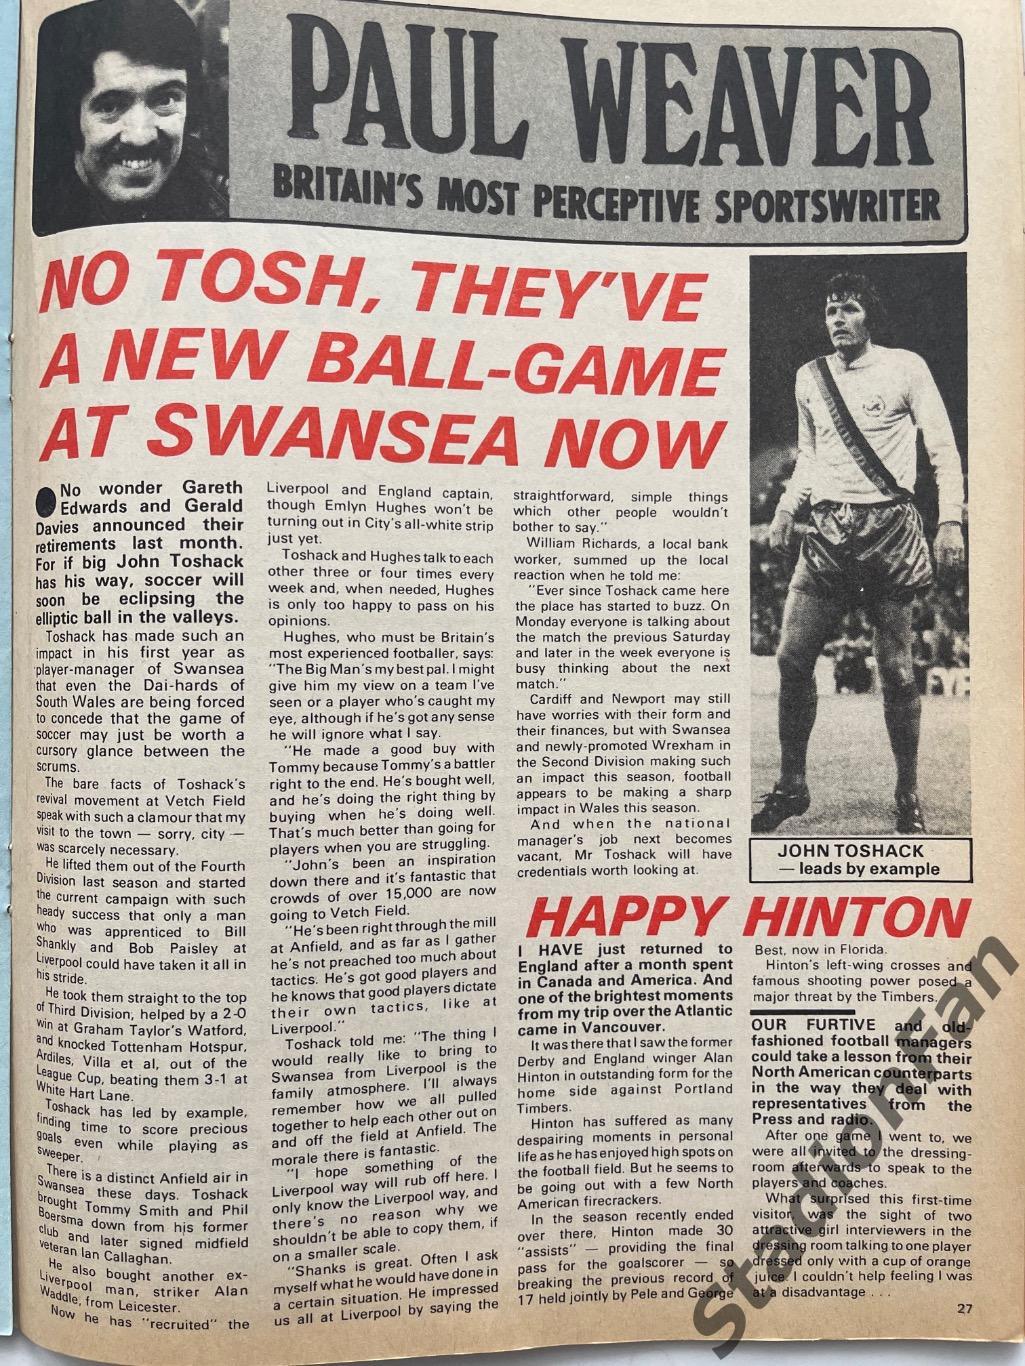 Журнал FOOTBALL - 1978 год, октябрь. 4